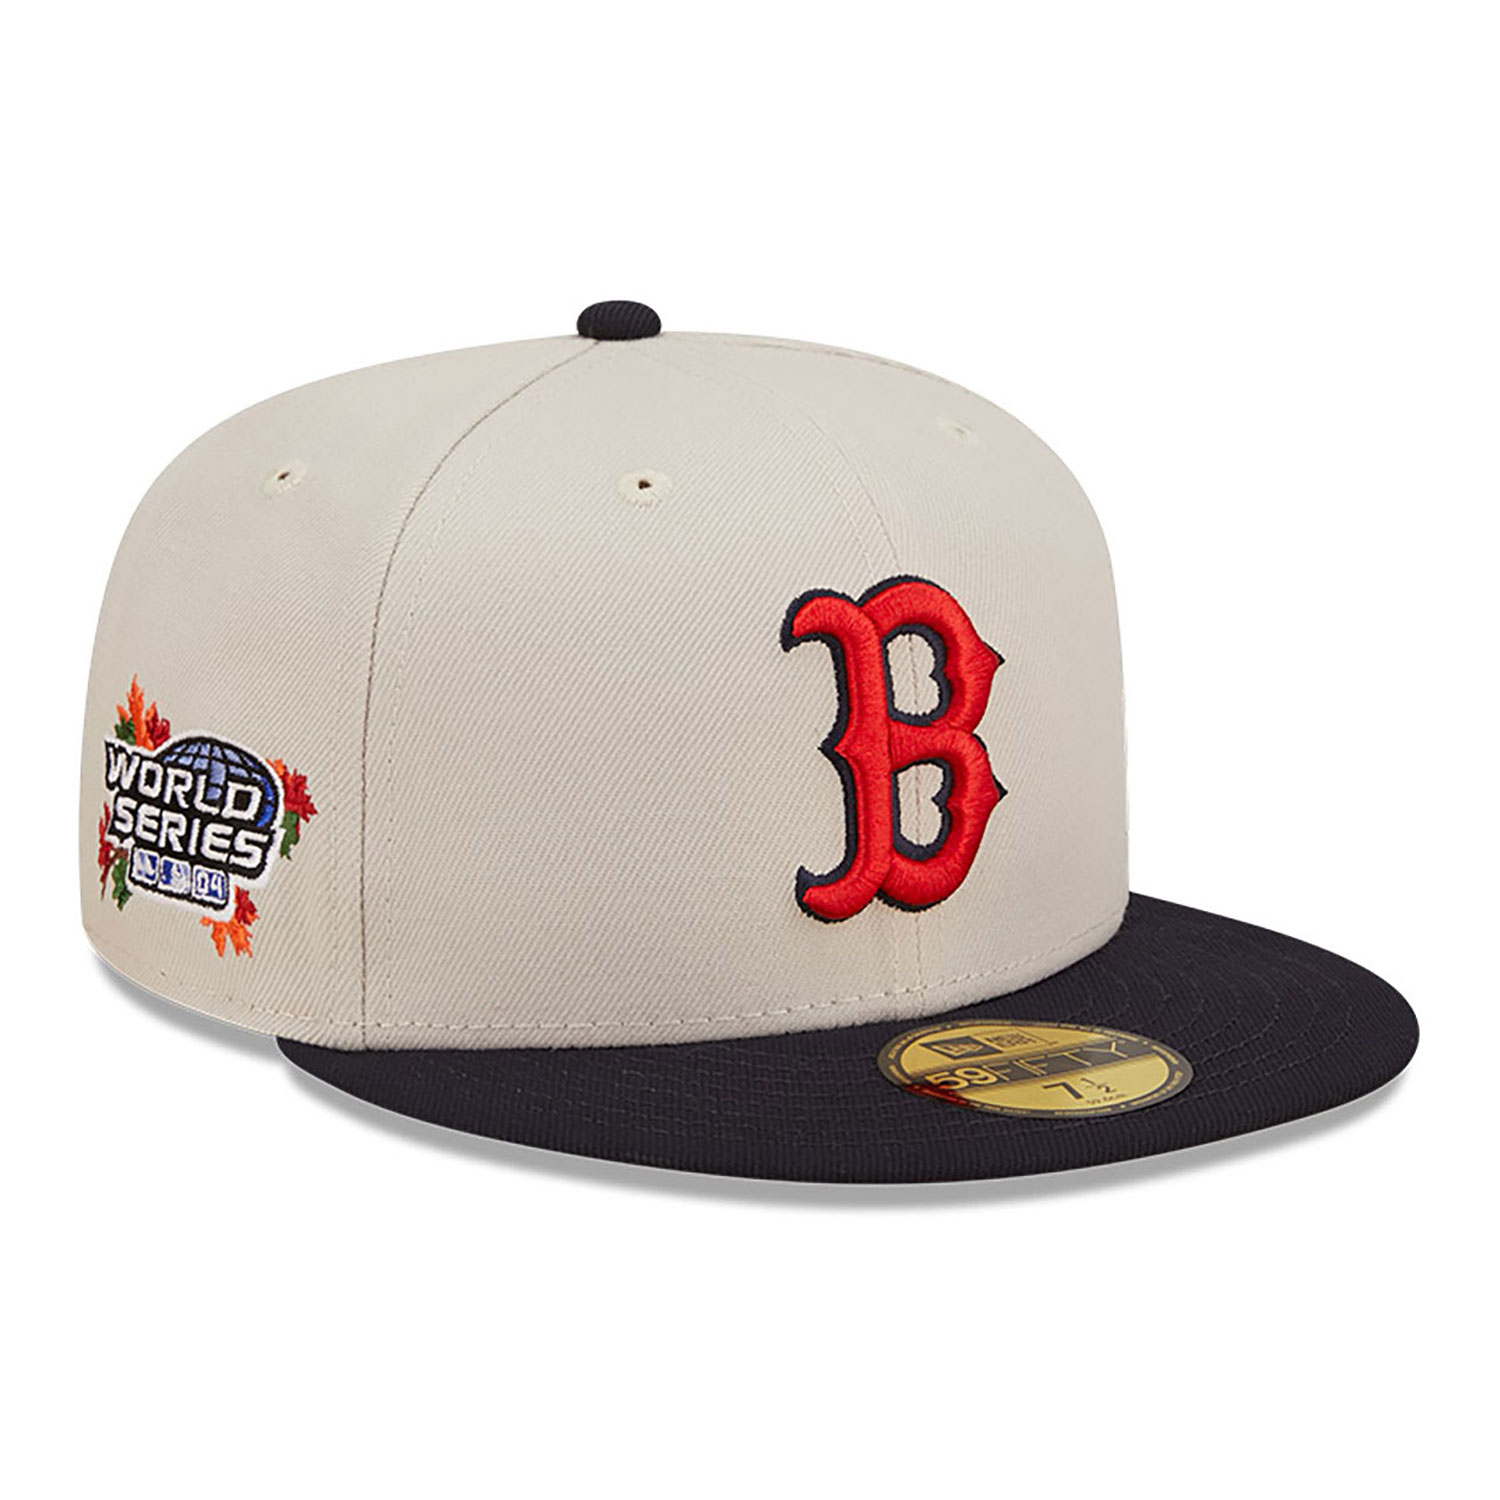 Berretto per Bambini Estl 9Forty Adjustable cap Boston Red Sox Colore Grigio/Rosso New Era 